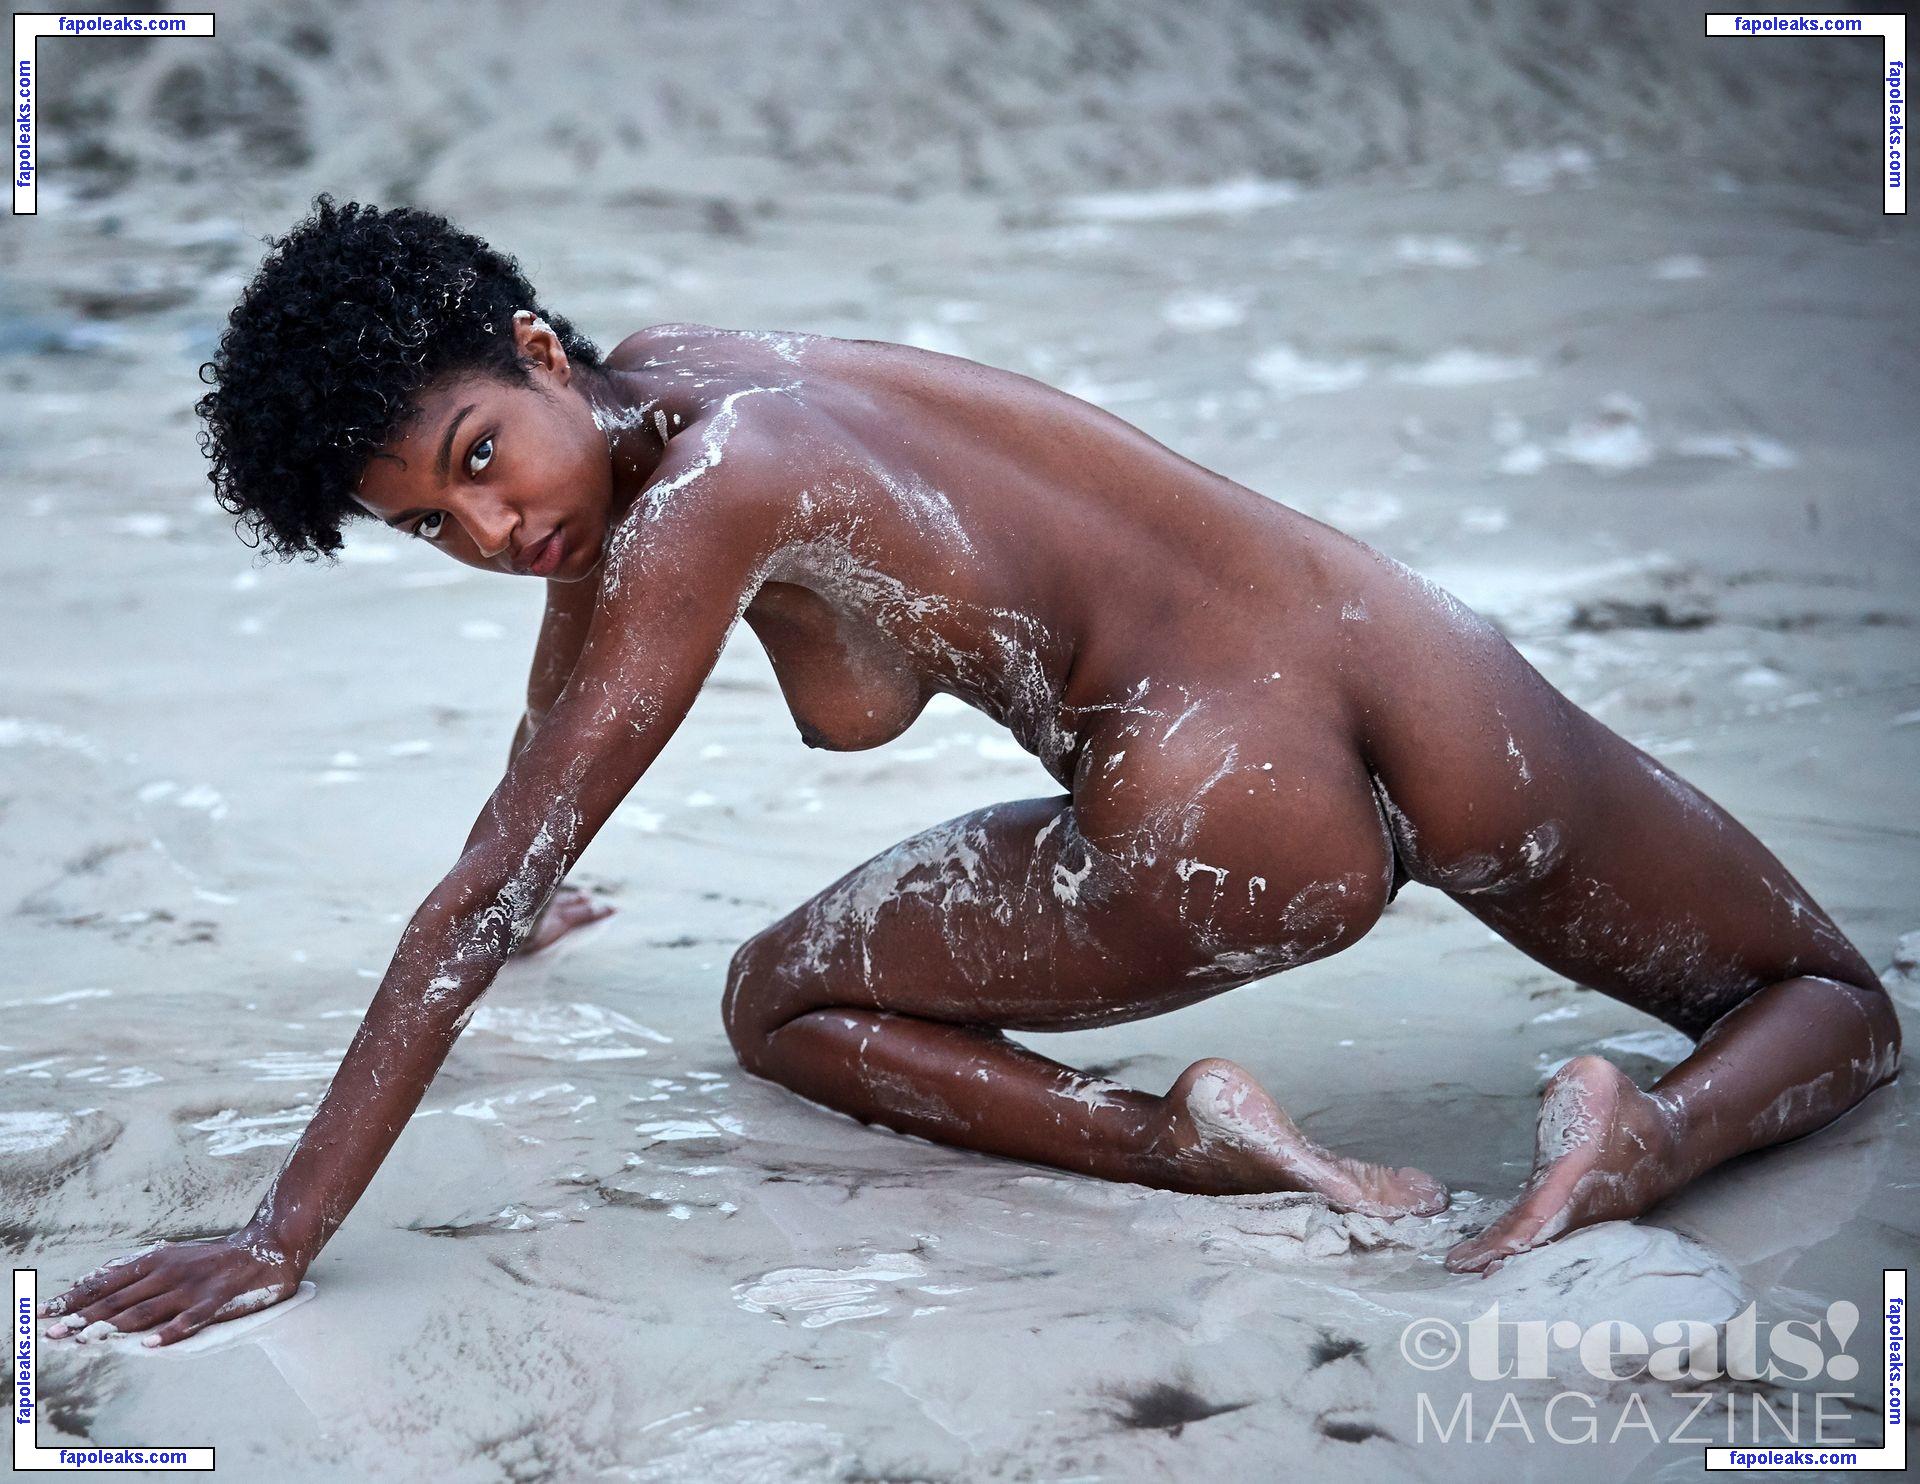 Ebonee Davis / eboneedavis nude photo #0158 from OnlyFans